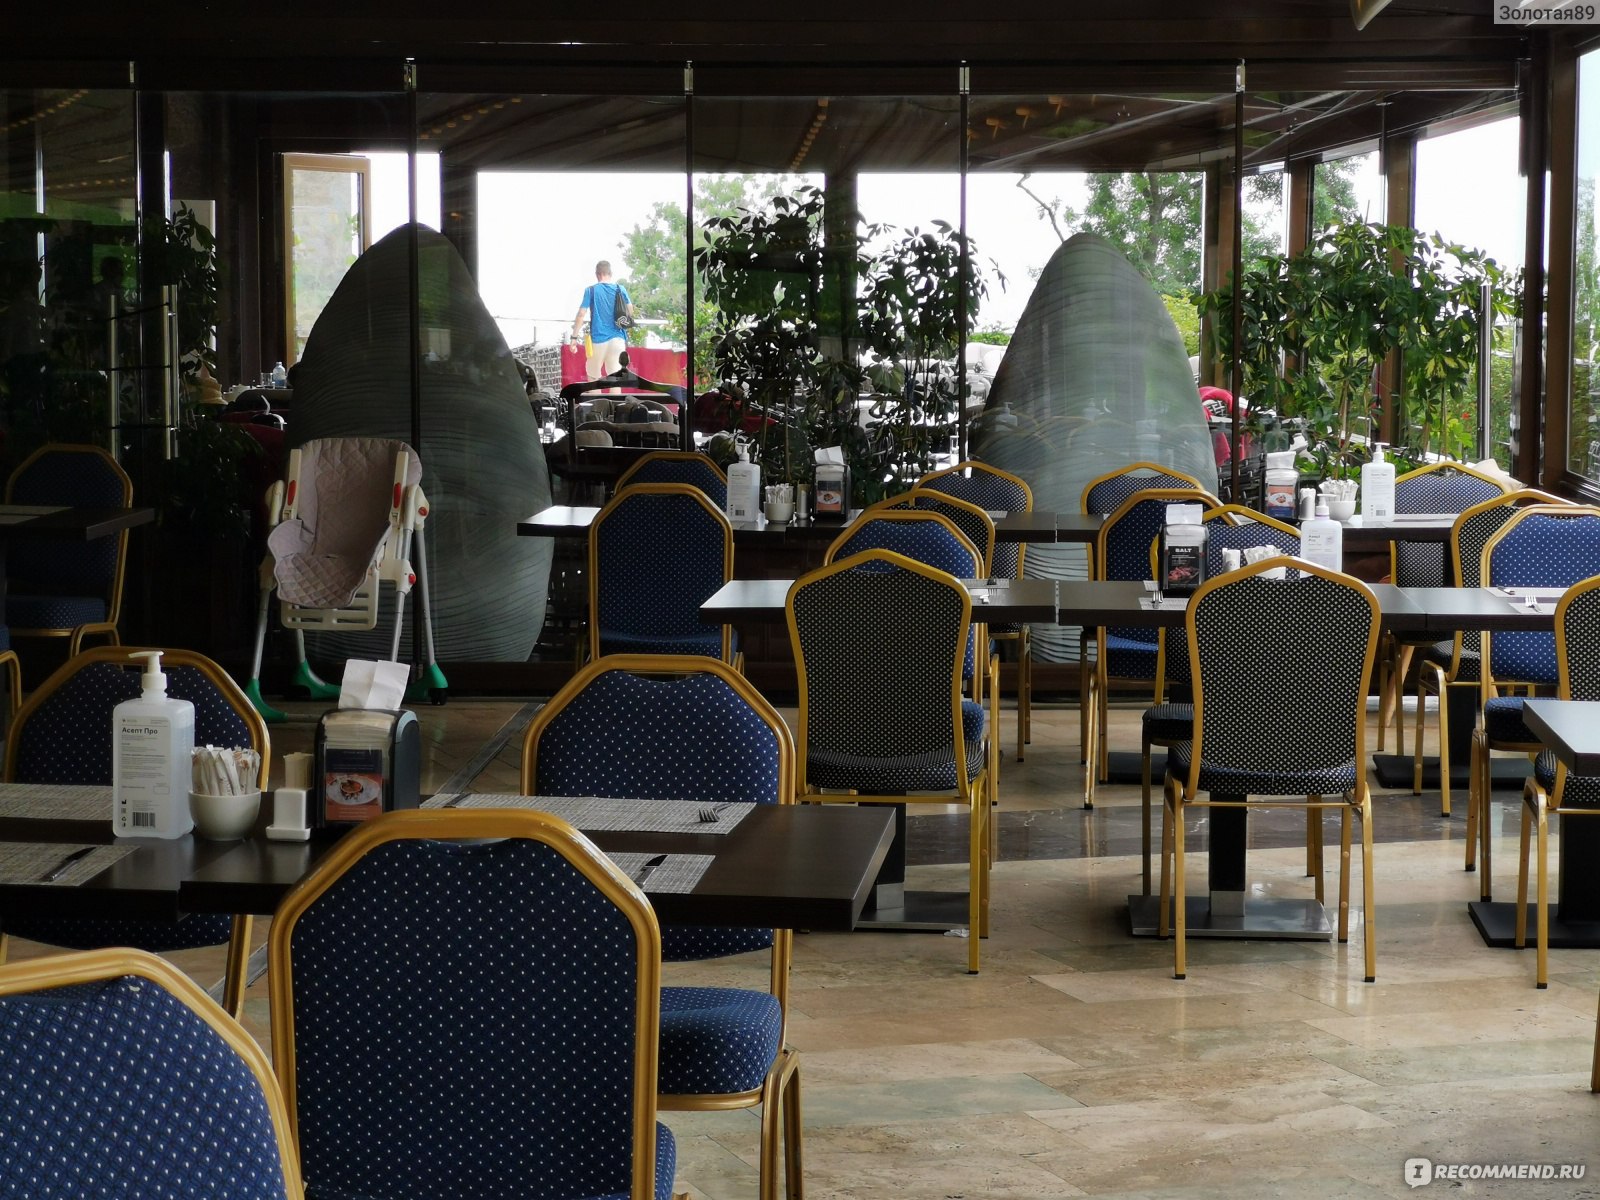 Ресторан в отеле Мрия отзывы туристов 